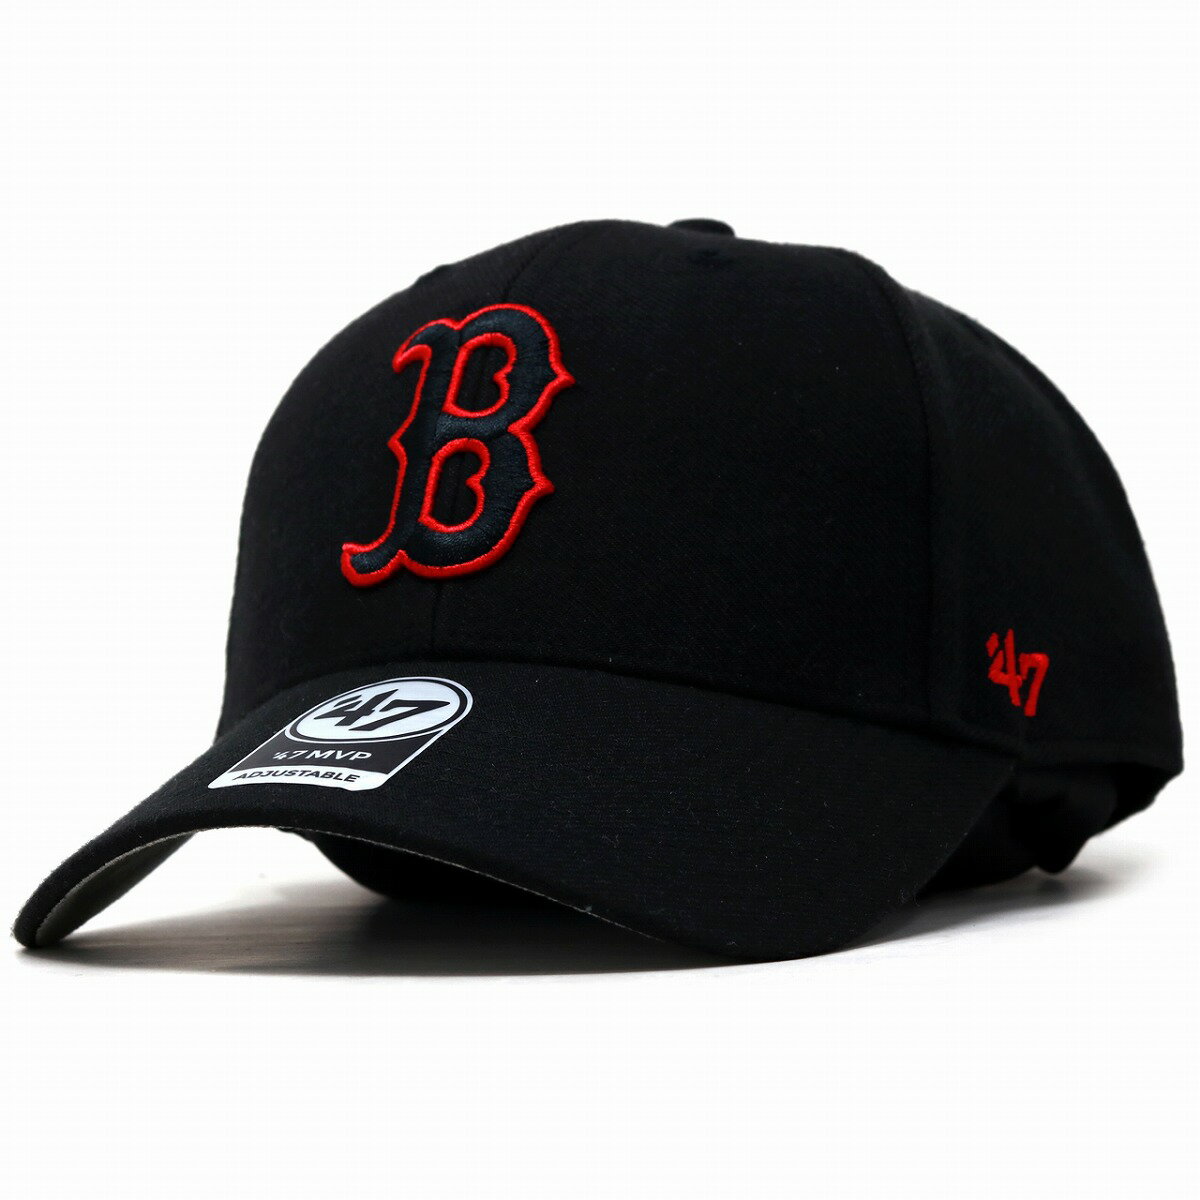 キャップ 47brand 47キャップ MVP 春夏 ボストン・レッドソックス 秋冬 フォーティーセブン マジックアジャスター ツイル生地 Red Sox '47 帽子 Black 黒 10代 20代 30代 40代 誕生日 プレゼント 父の日 